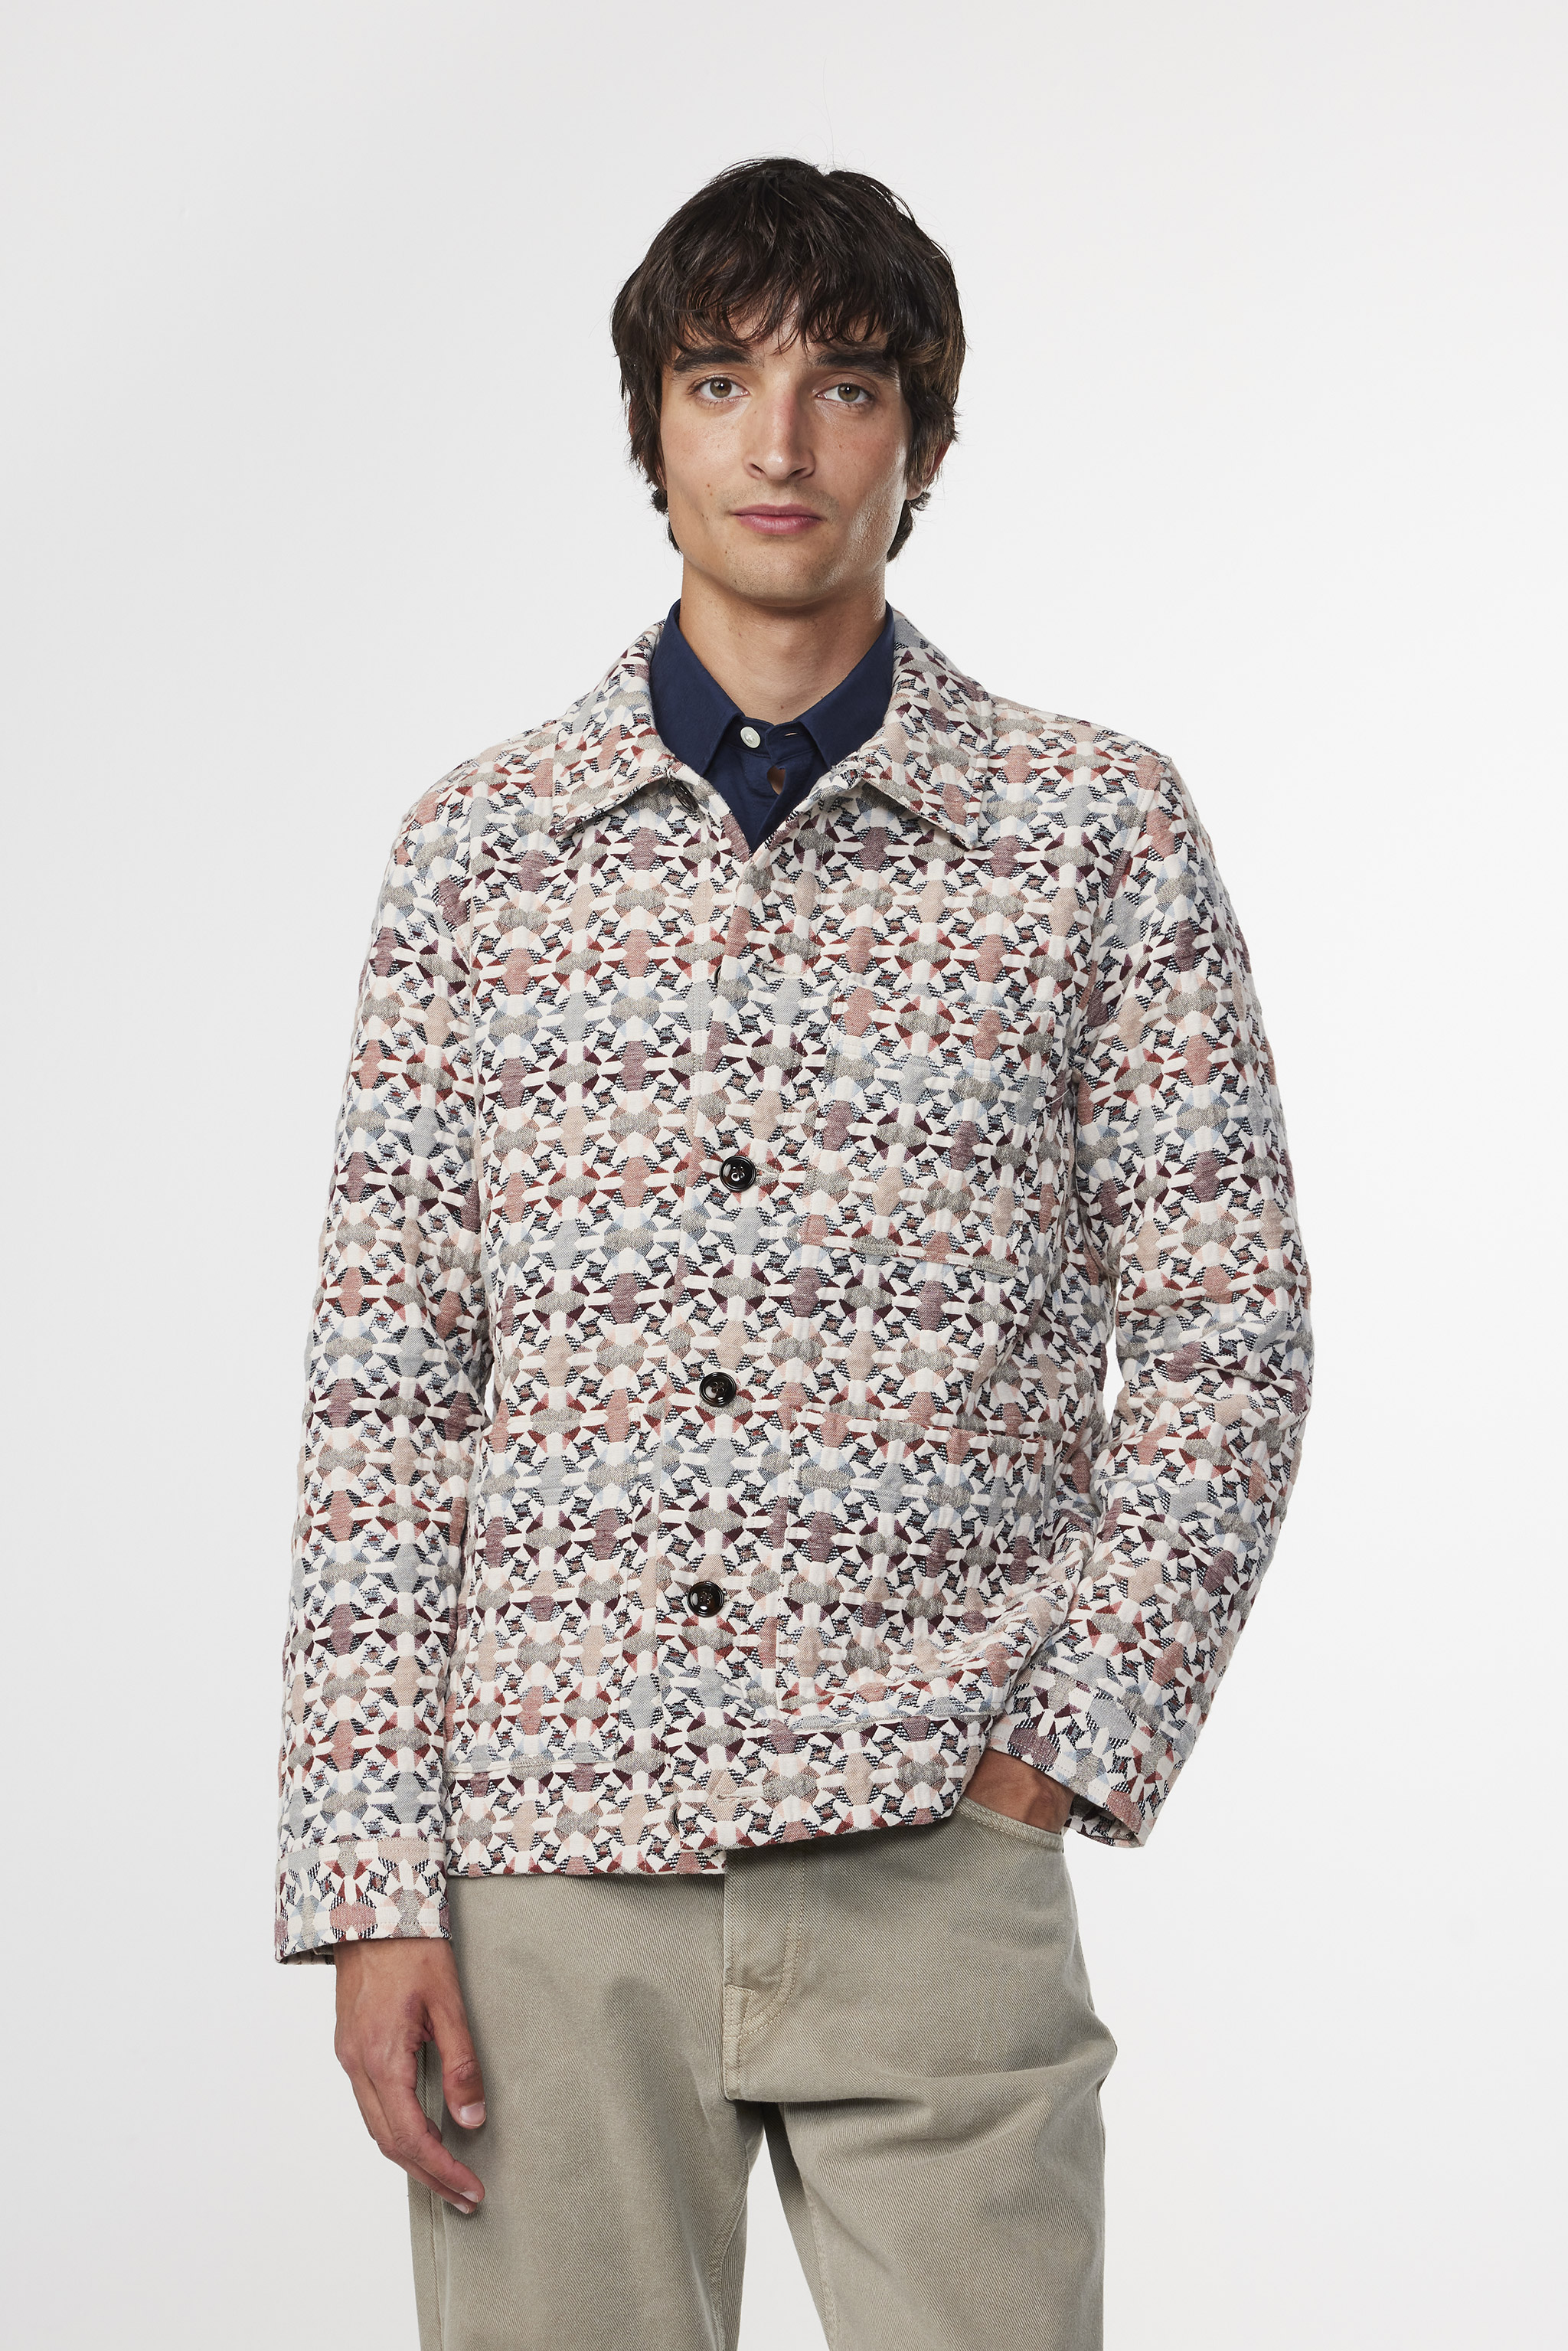 Olav 5234 men's jacket - Multi - Buy online at NN.07®